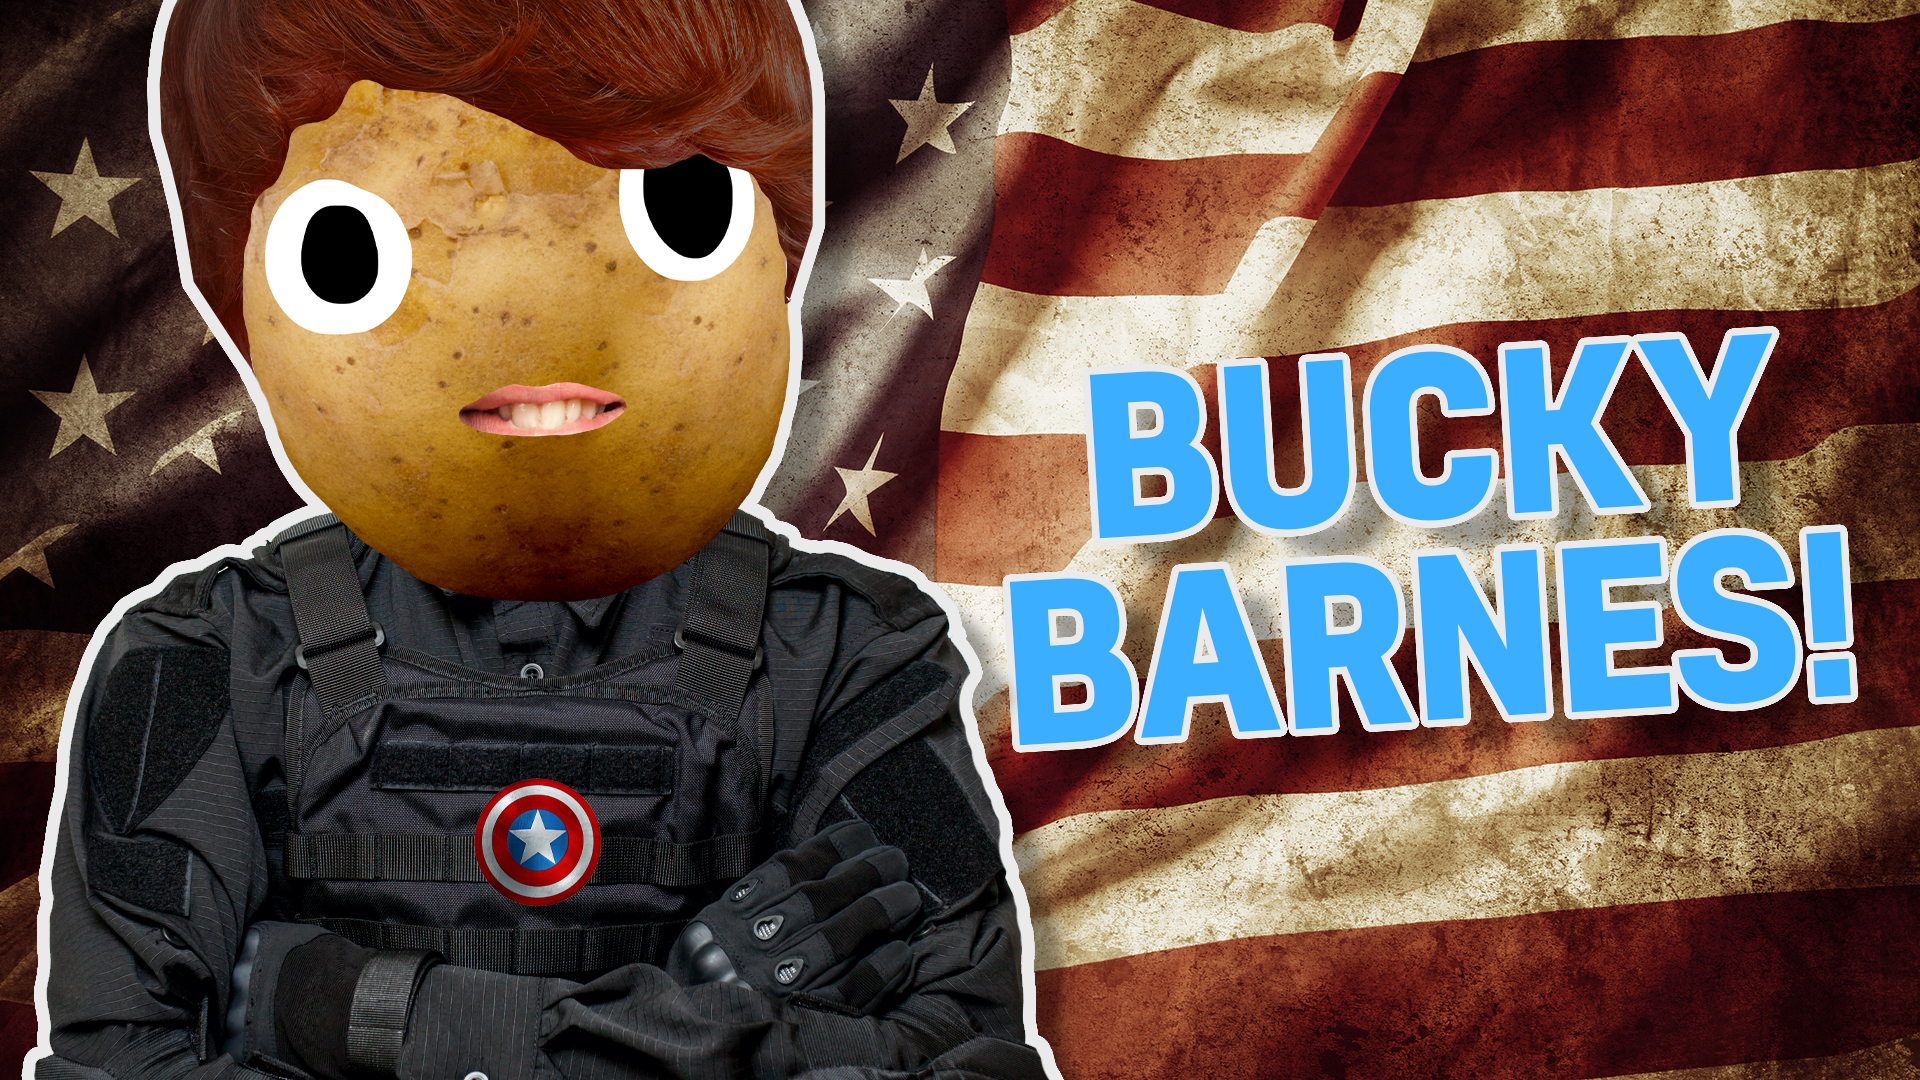 Result: Bucky Barnes